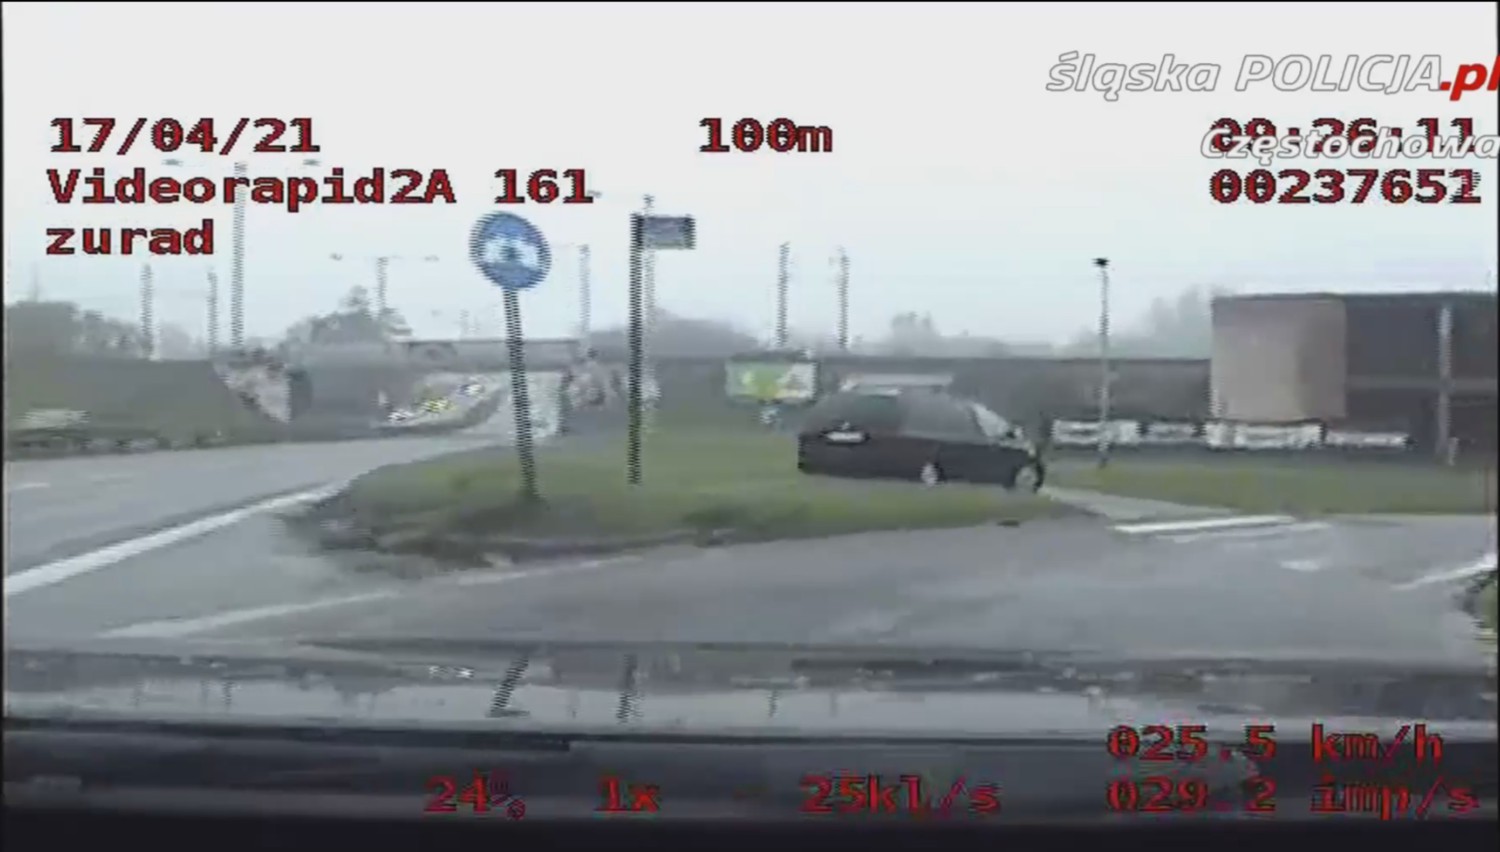 Częstochowska policja opublikowała nagranie brawurowej jazdy pijanego kierowcy 9